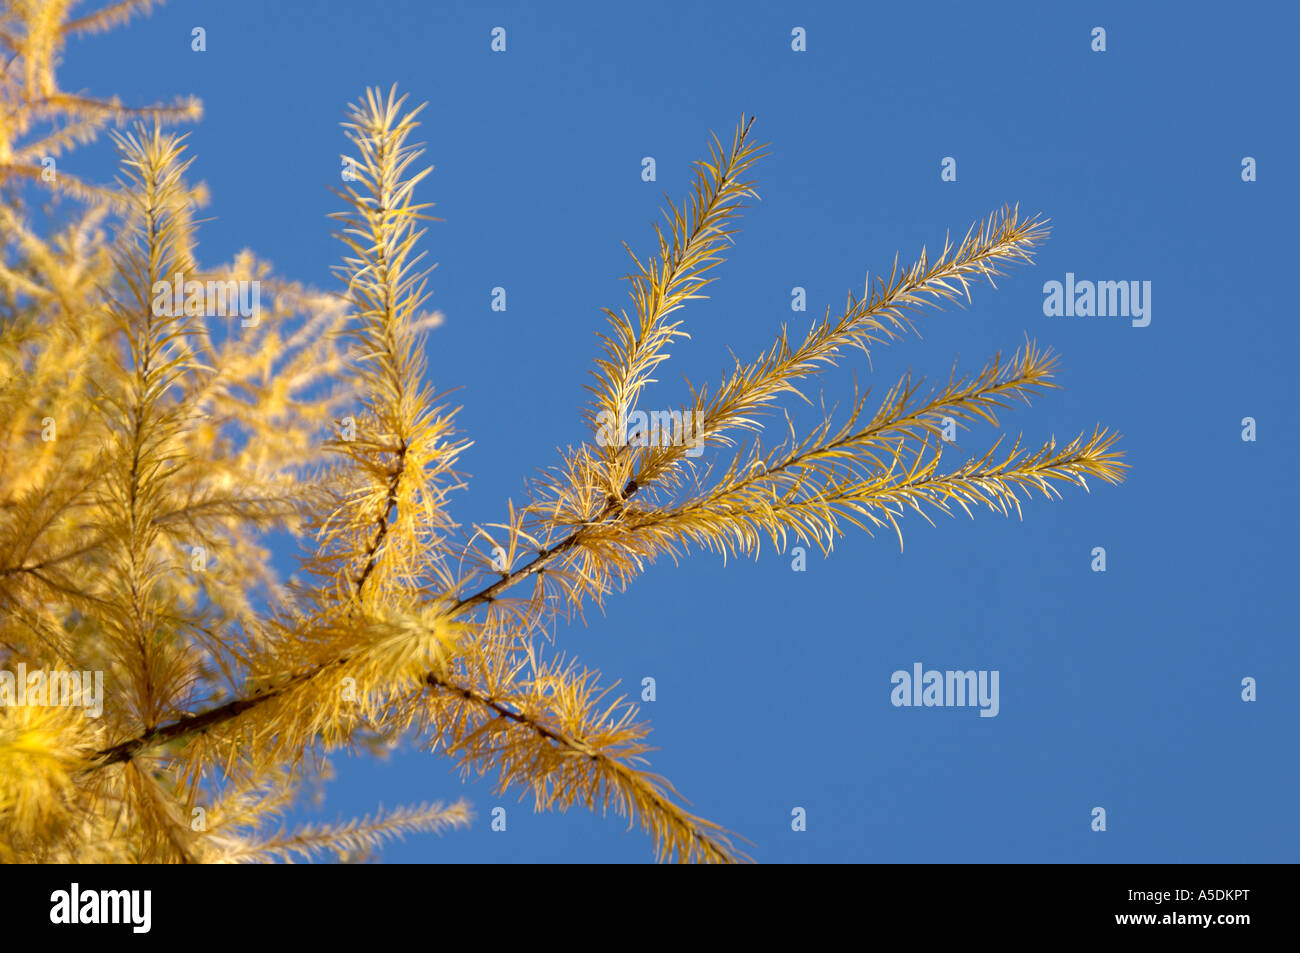 Larch species Larix sp needles showing autumn gold colour Stock Photo